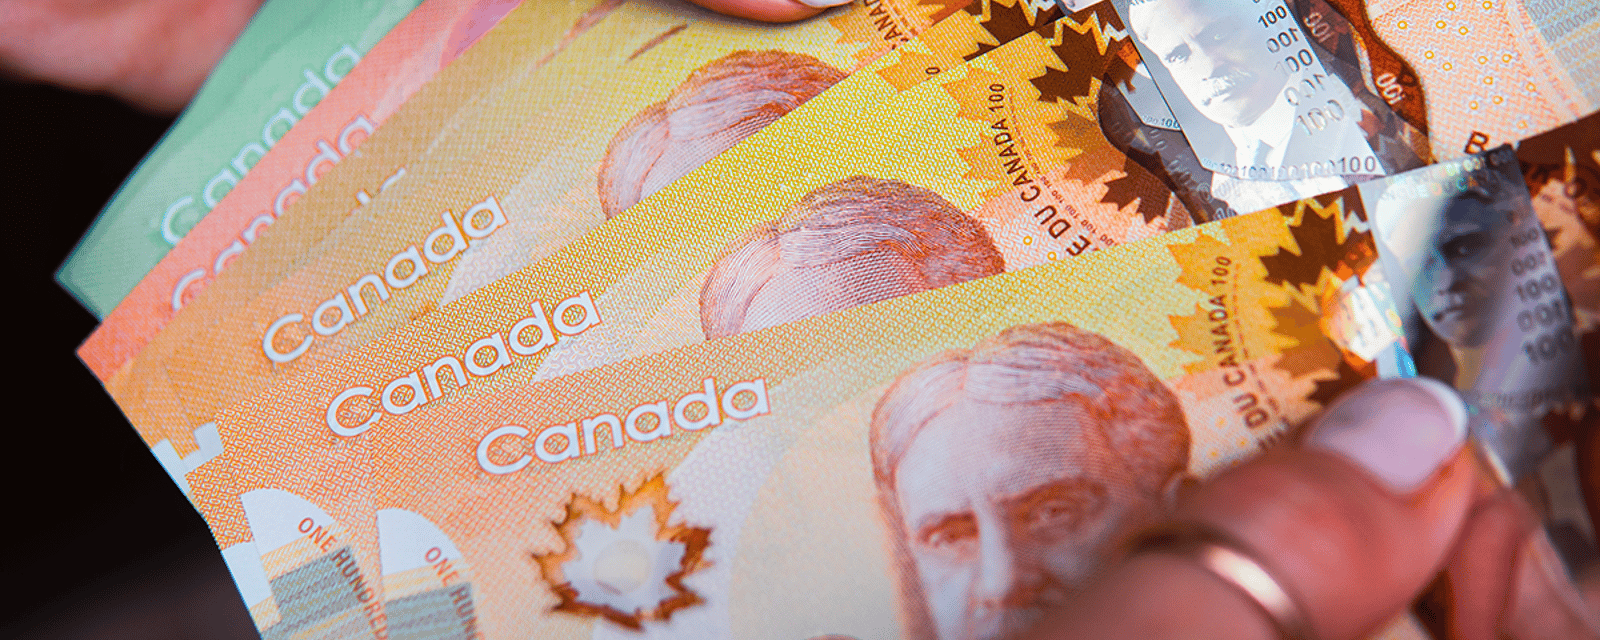 De faux billets de banque sont en circulation dans deux régions du Québec